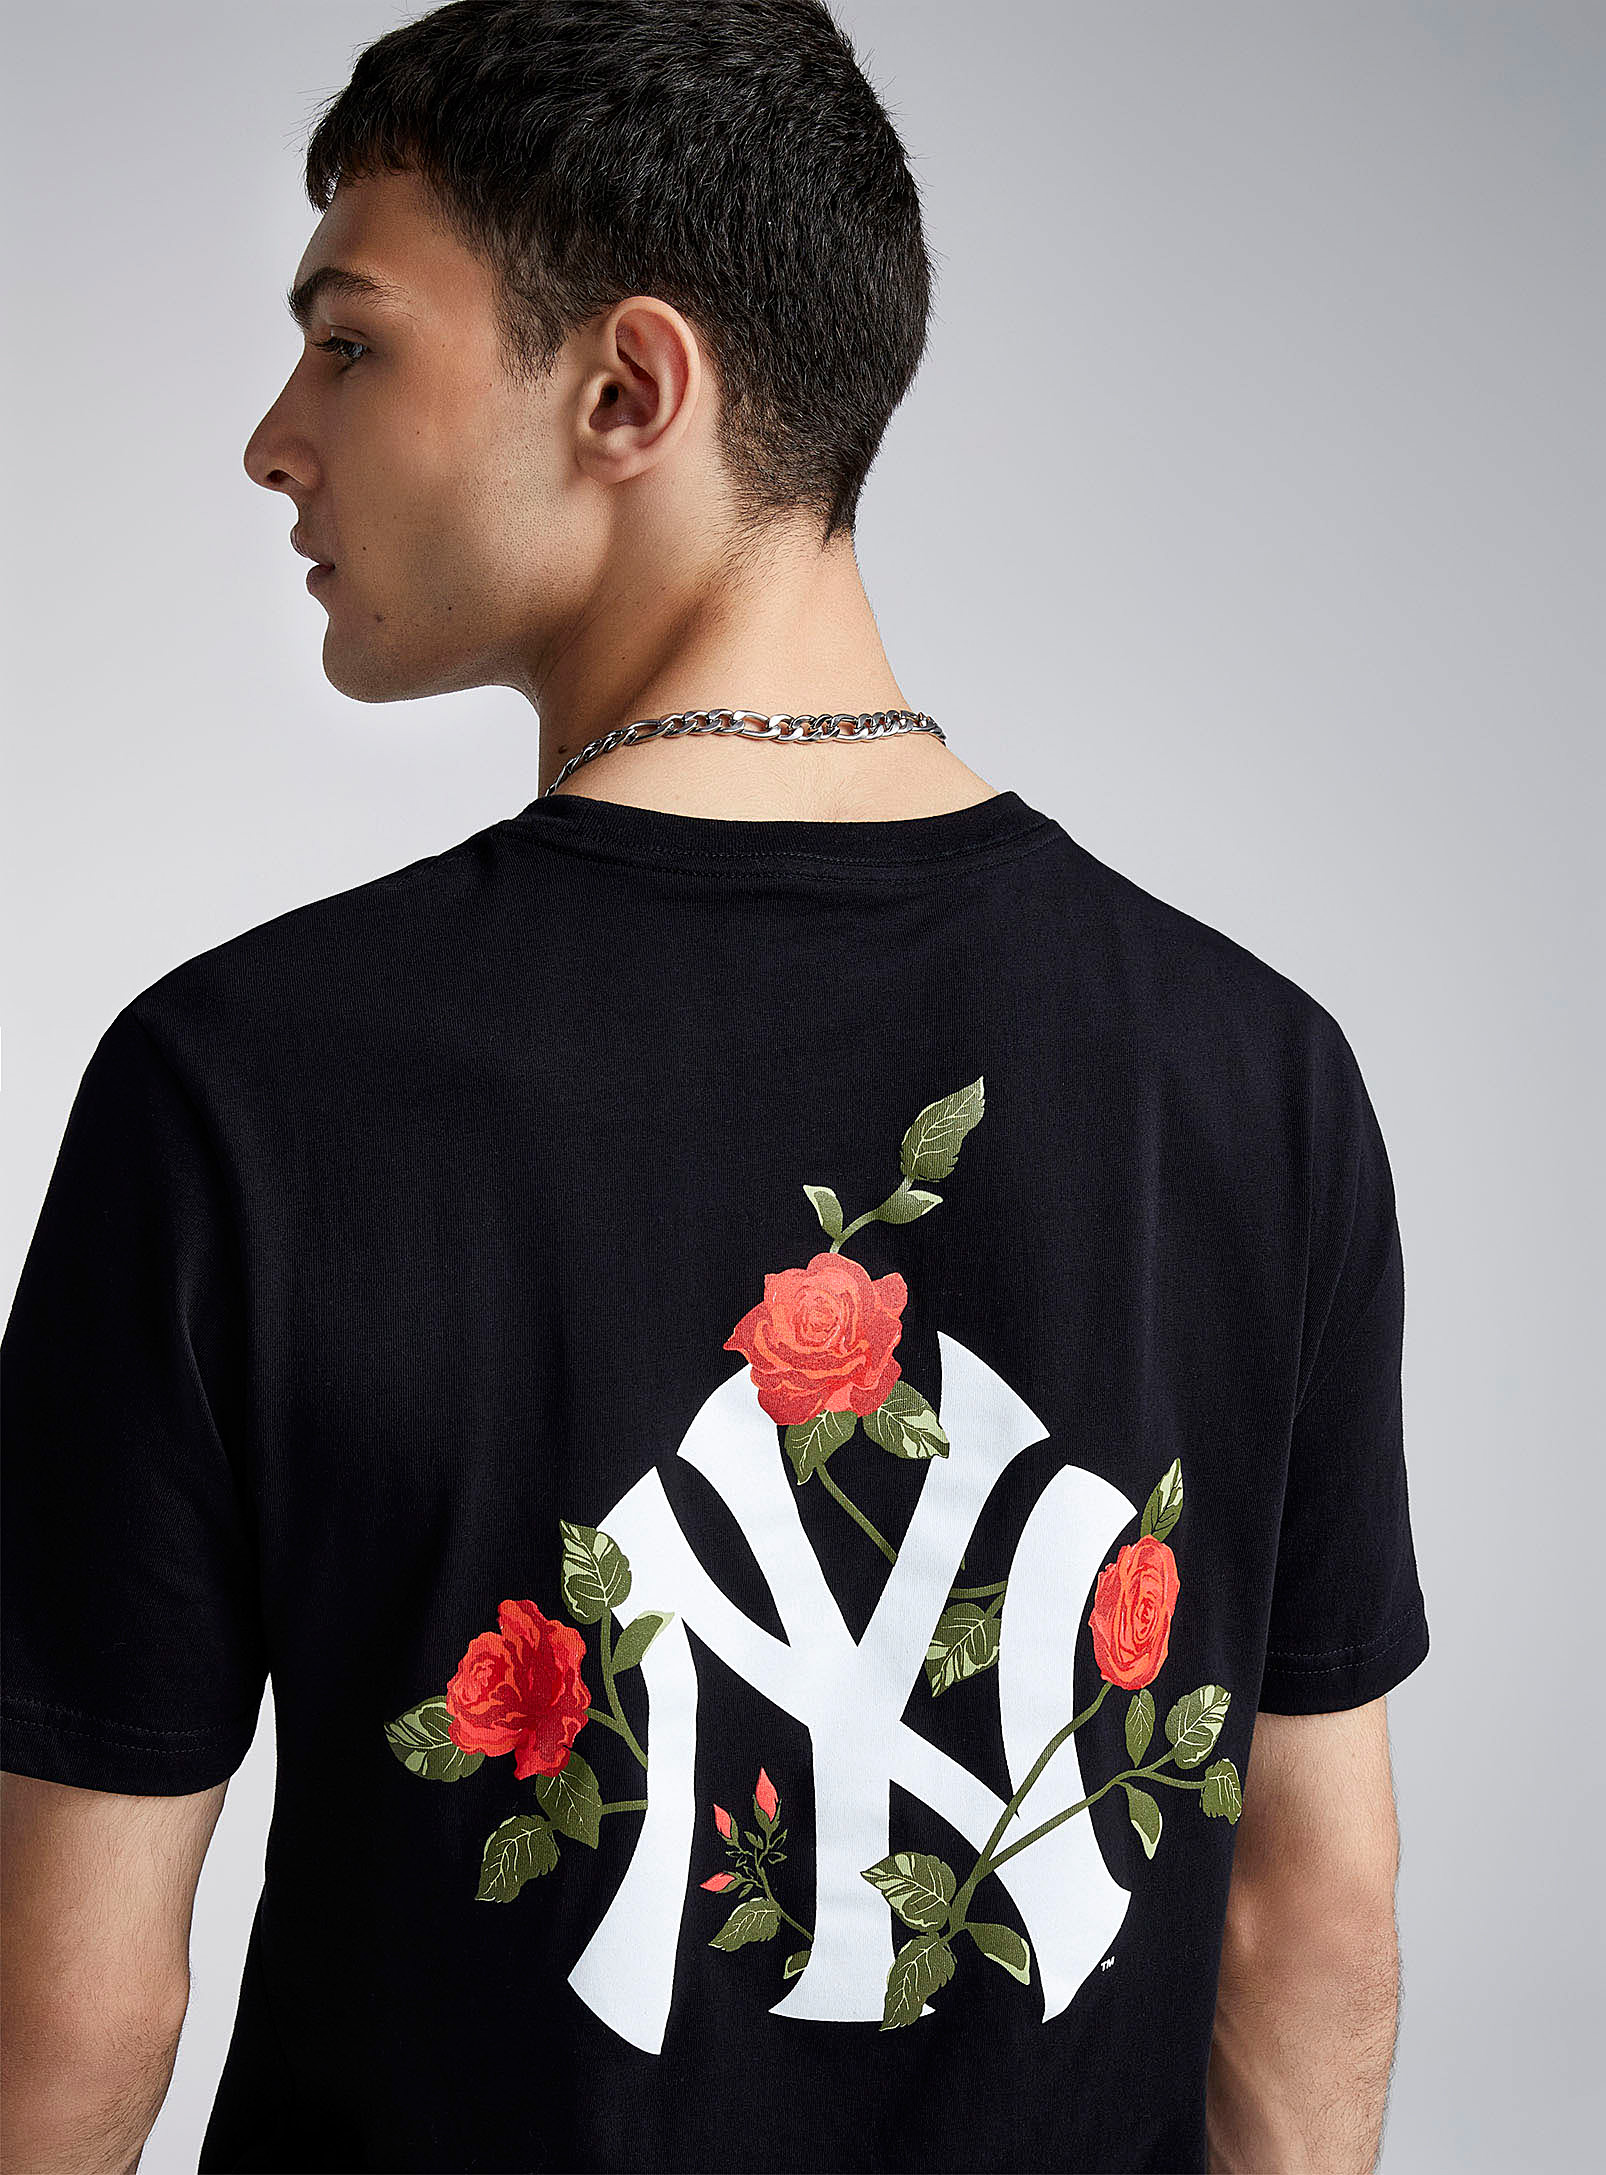 New Era - Le t-shirt Yankees roses